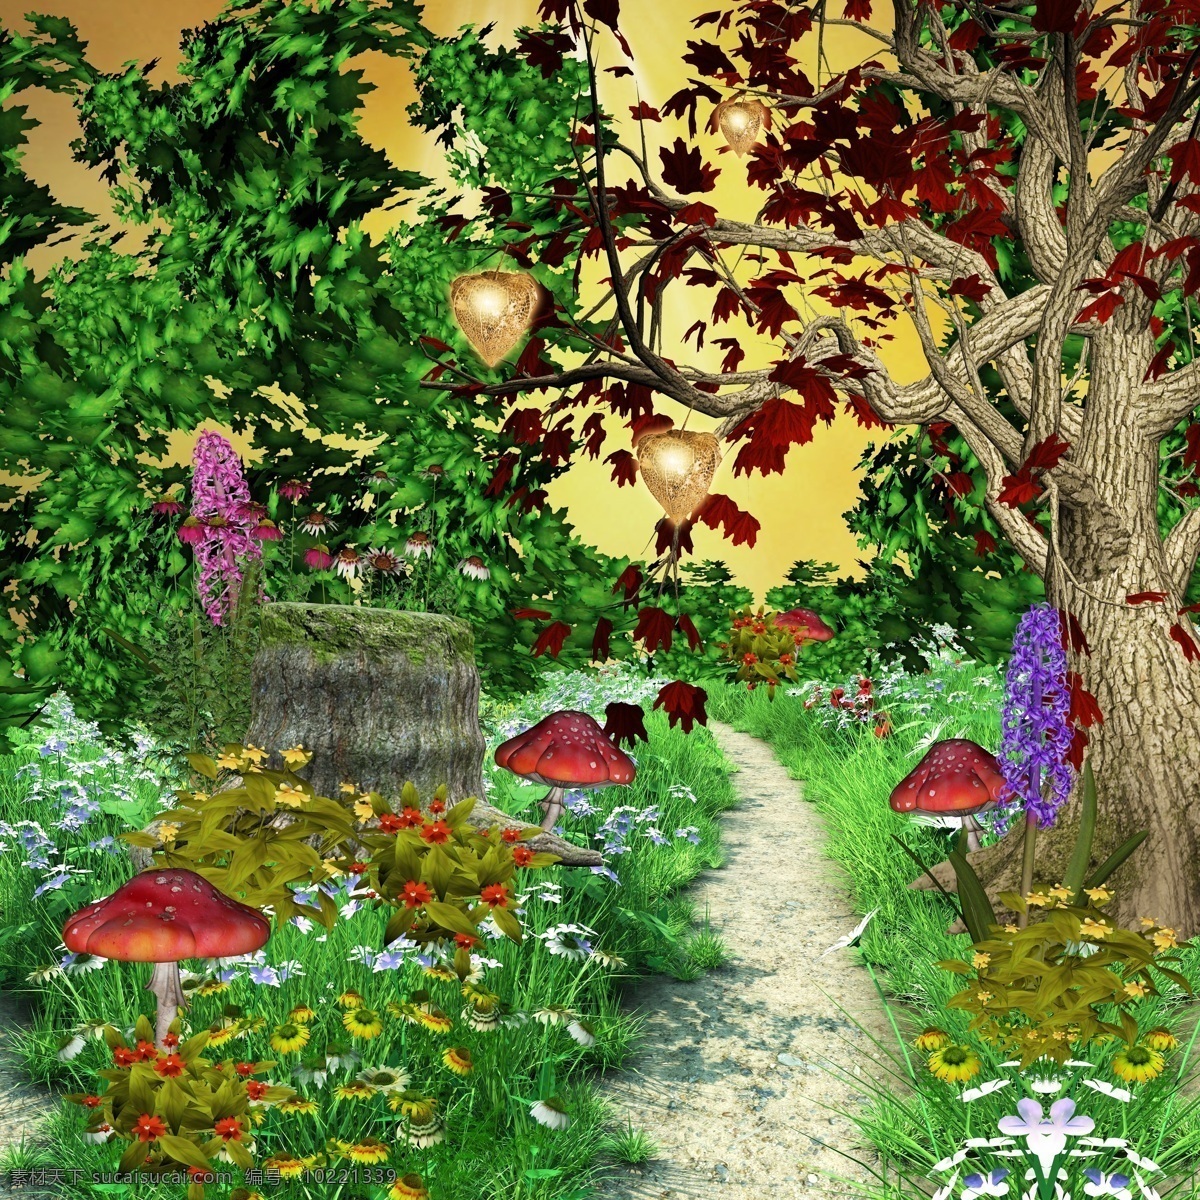 魔幻 风景 魔幻风景 装饰画 阳光 树木 蘑菇 小道 花草树木 果实 绘画书法 文化艺术 山水风景 风景图片